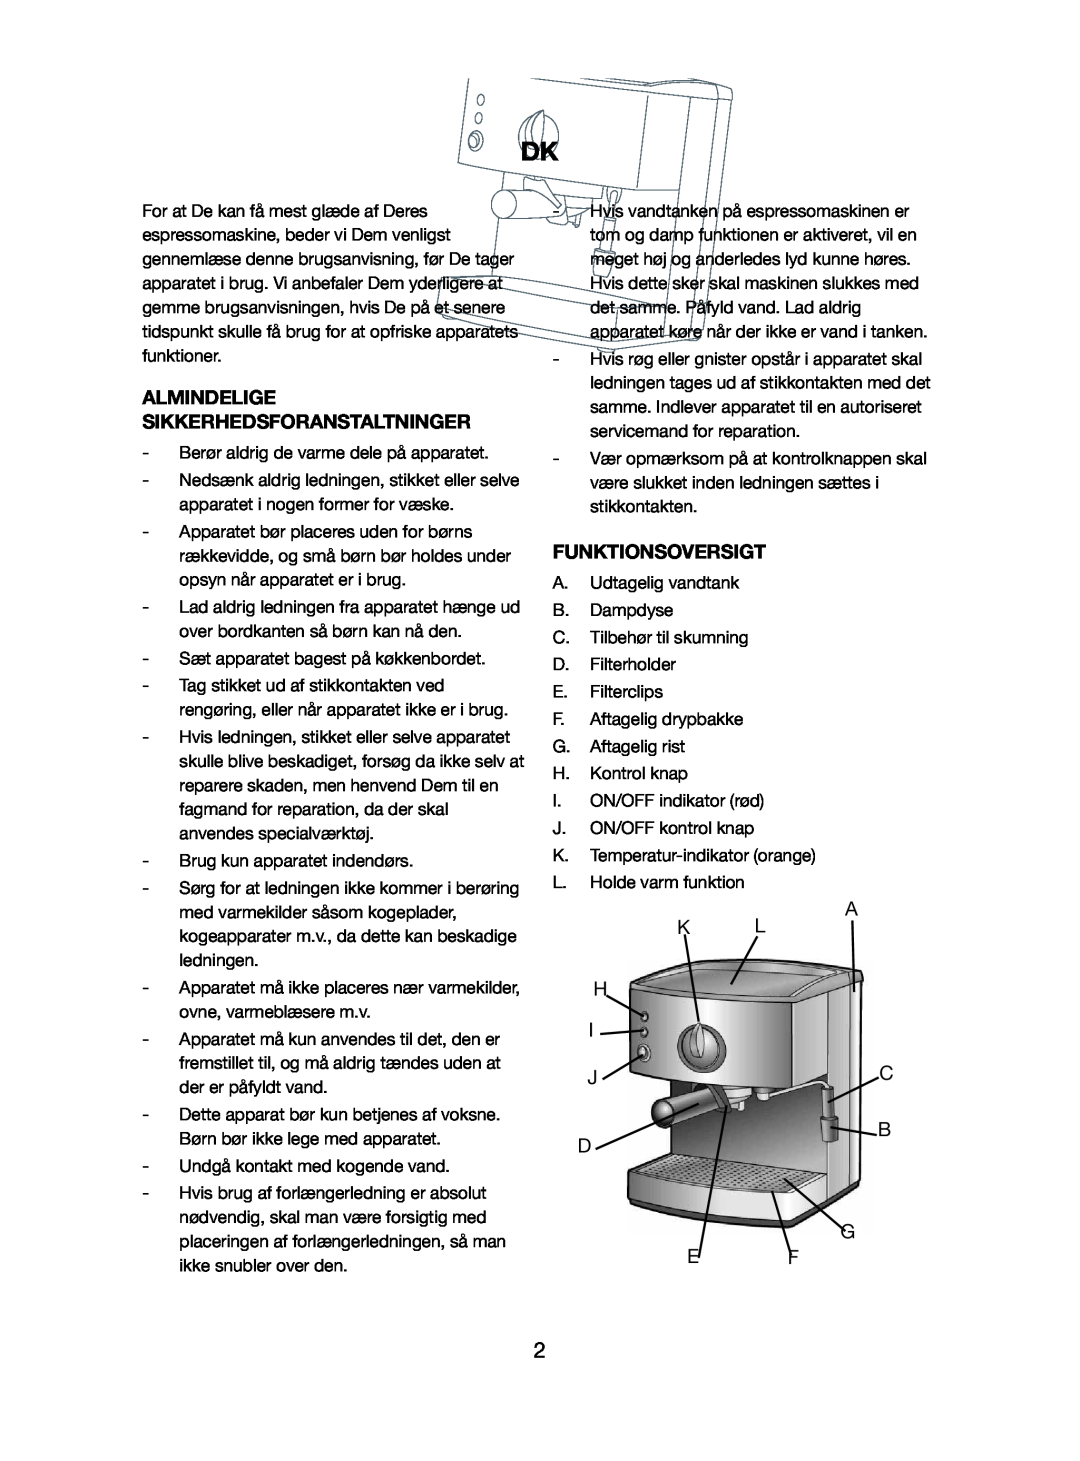 Melissa 245-032 manual Almindelige Sikkerhedsforanstaltninger, Funktionsoversigt, A K L H I J C B D G E F 